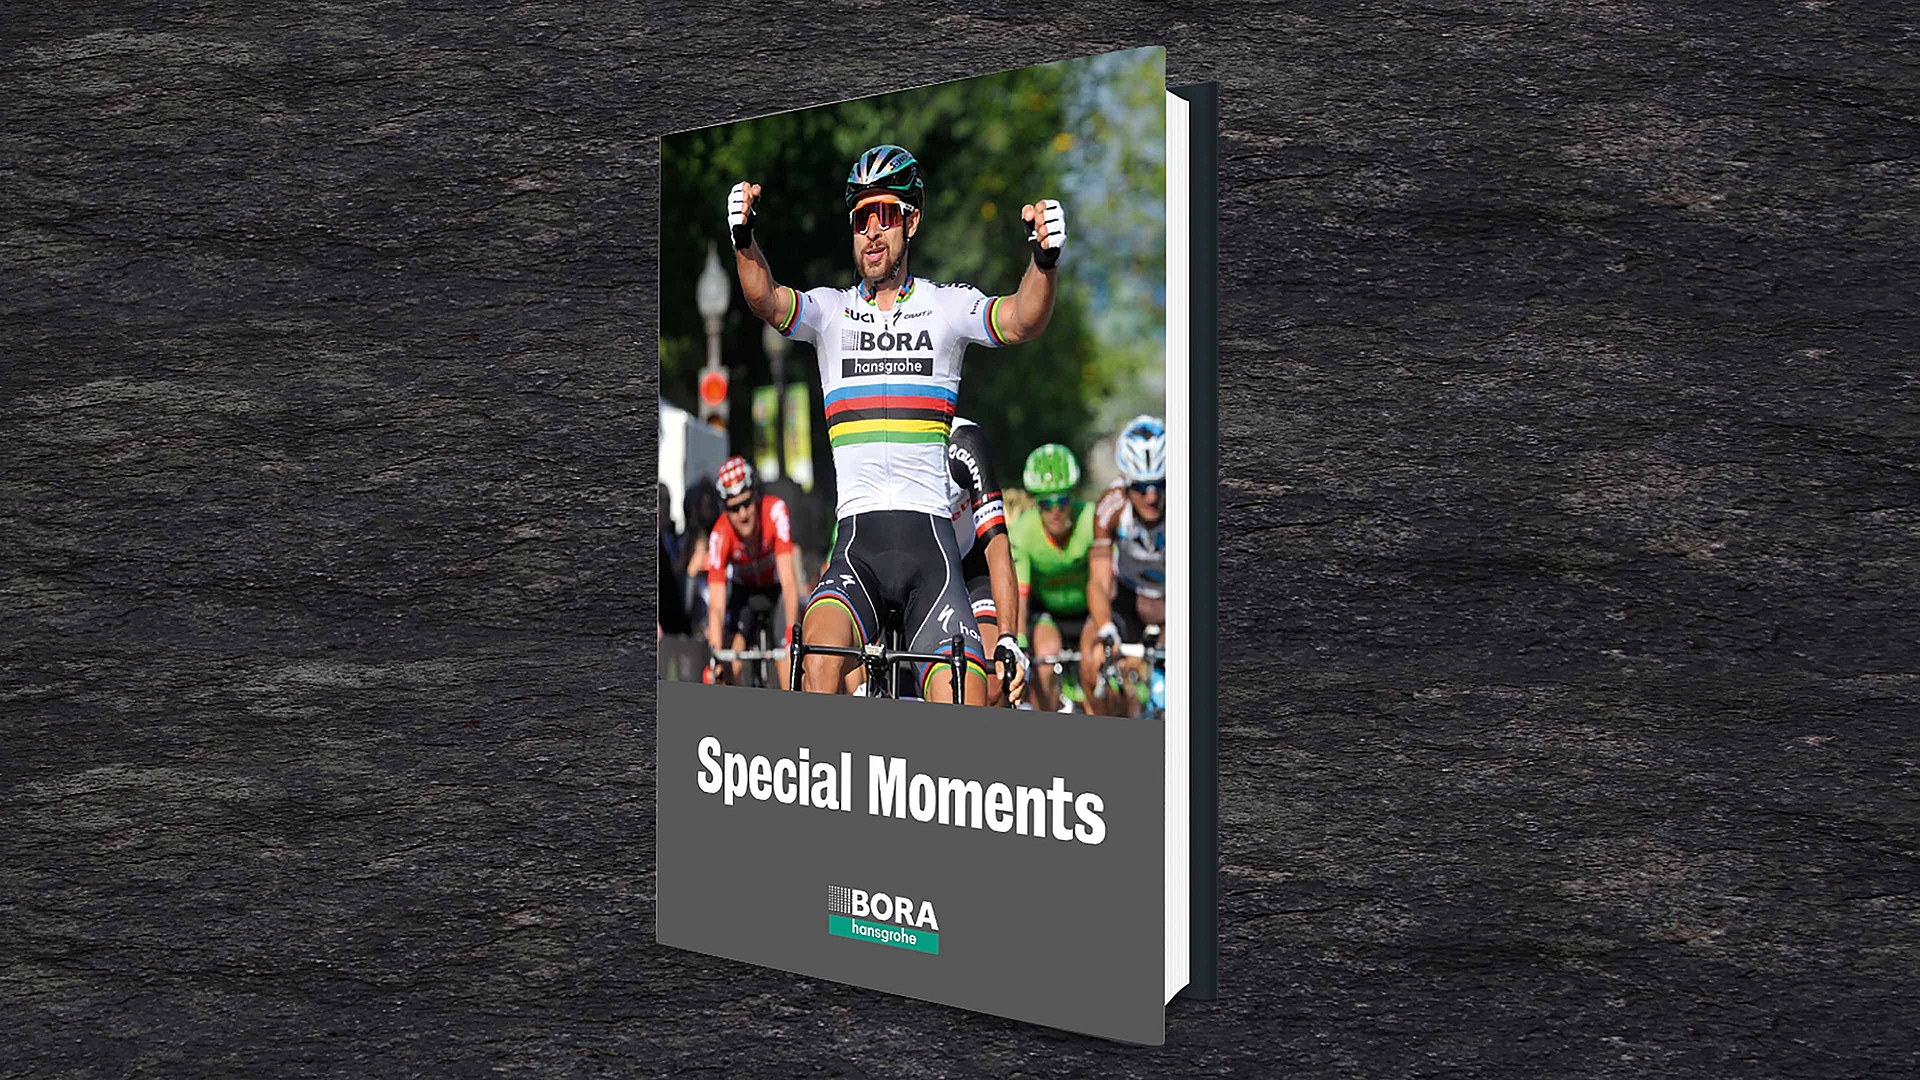 Radsport-Bildband "Special Moments" dokumentiert die rasante Saison 2017